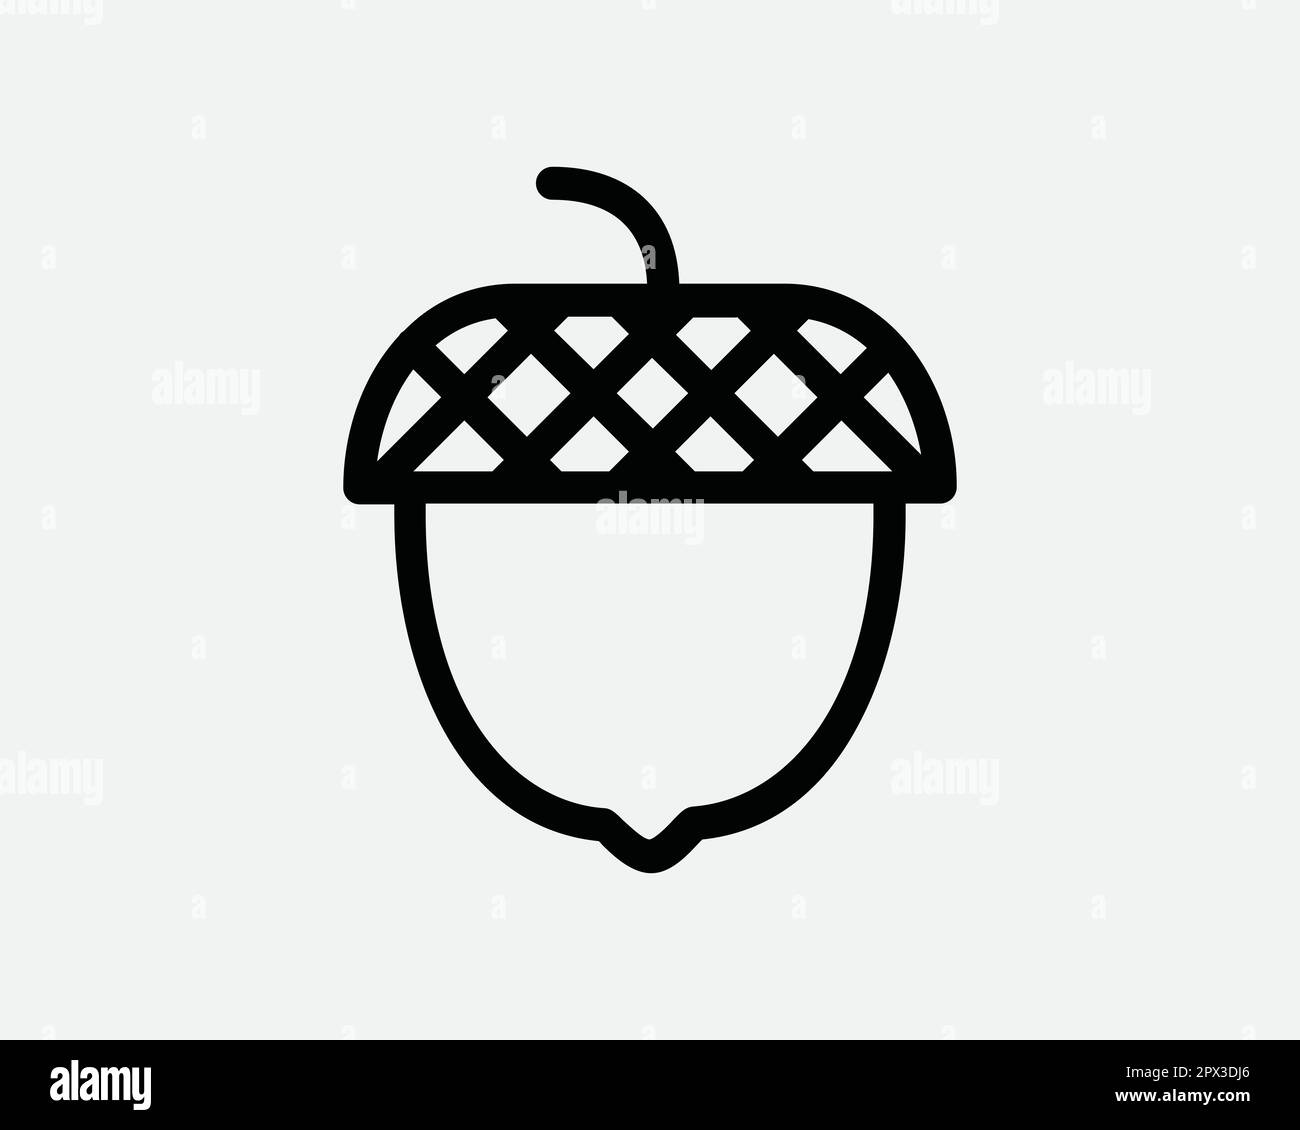 Acorn Outline Nut Fruit Herbstsaison Schwarze und weiße Linie Symbol Zeichen Symbol Vector Artwork Clipart Illustration Stock Vektor